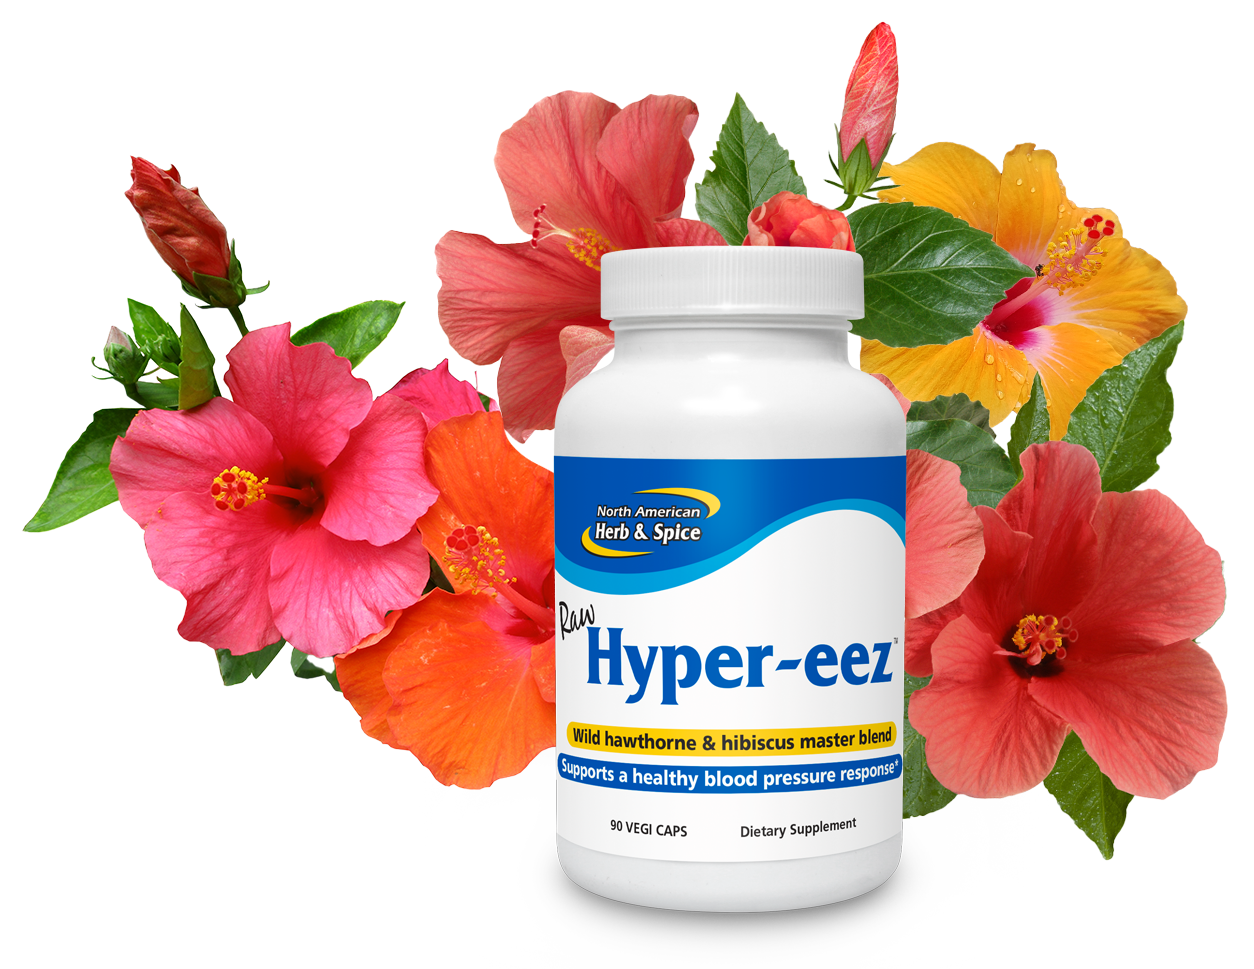 Hibiscus flowers with Hyper-eez bottle